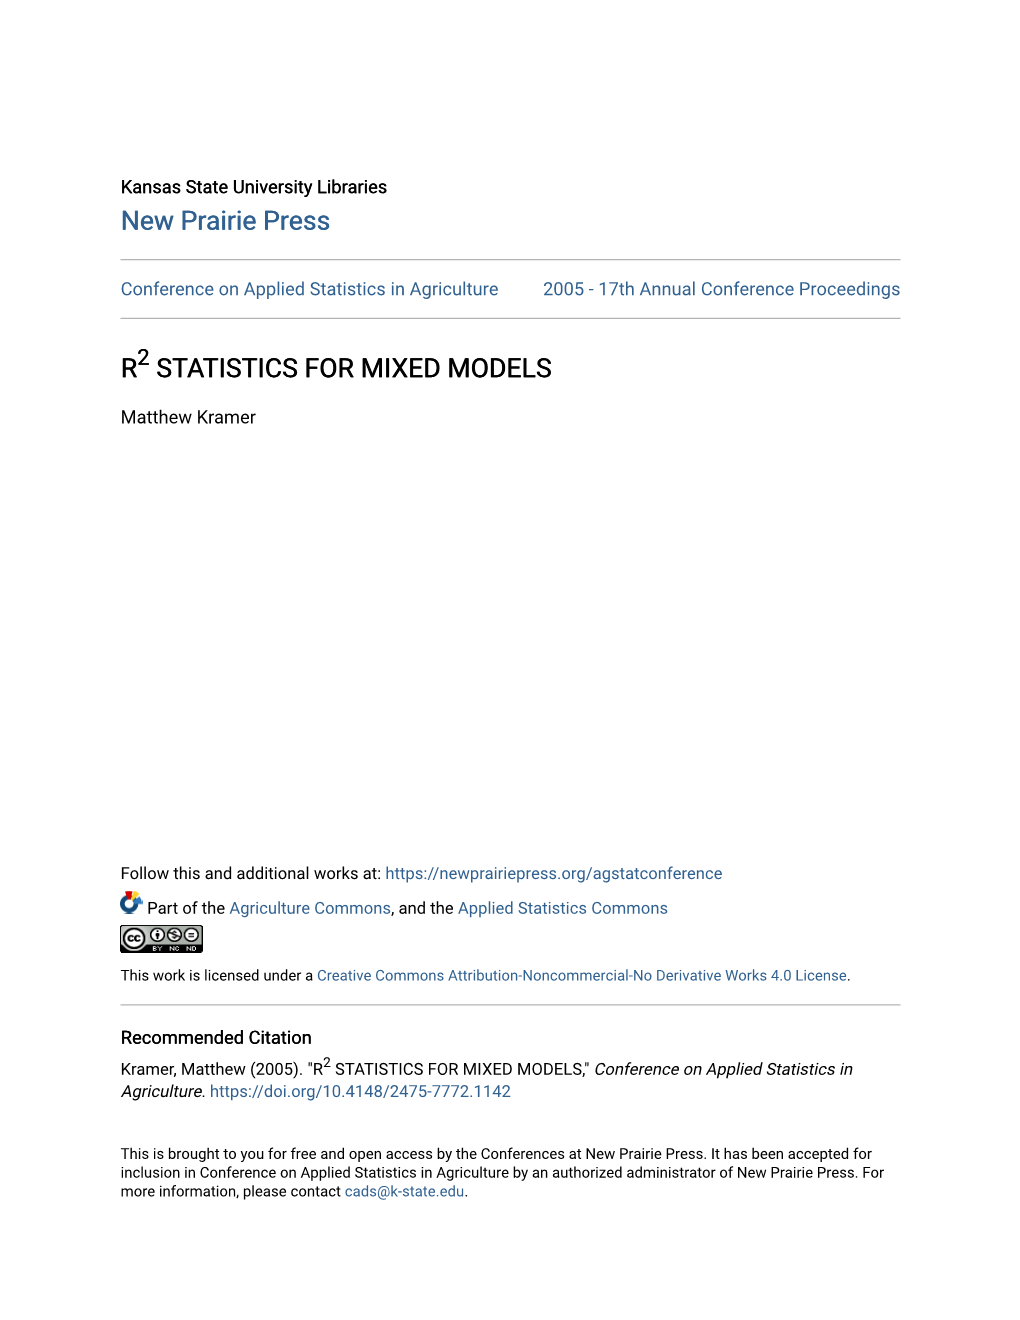 R2 Statistics for Mixed Models